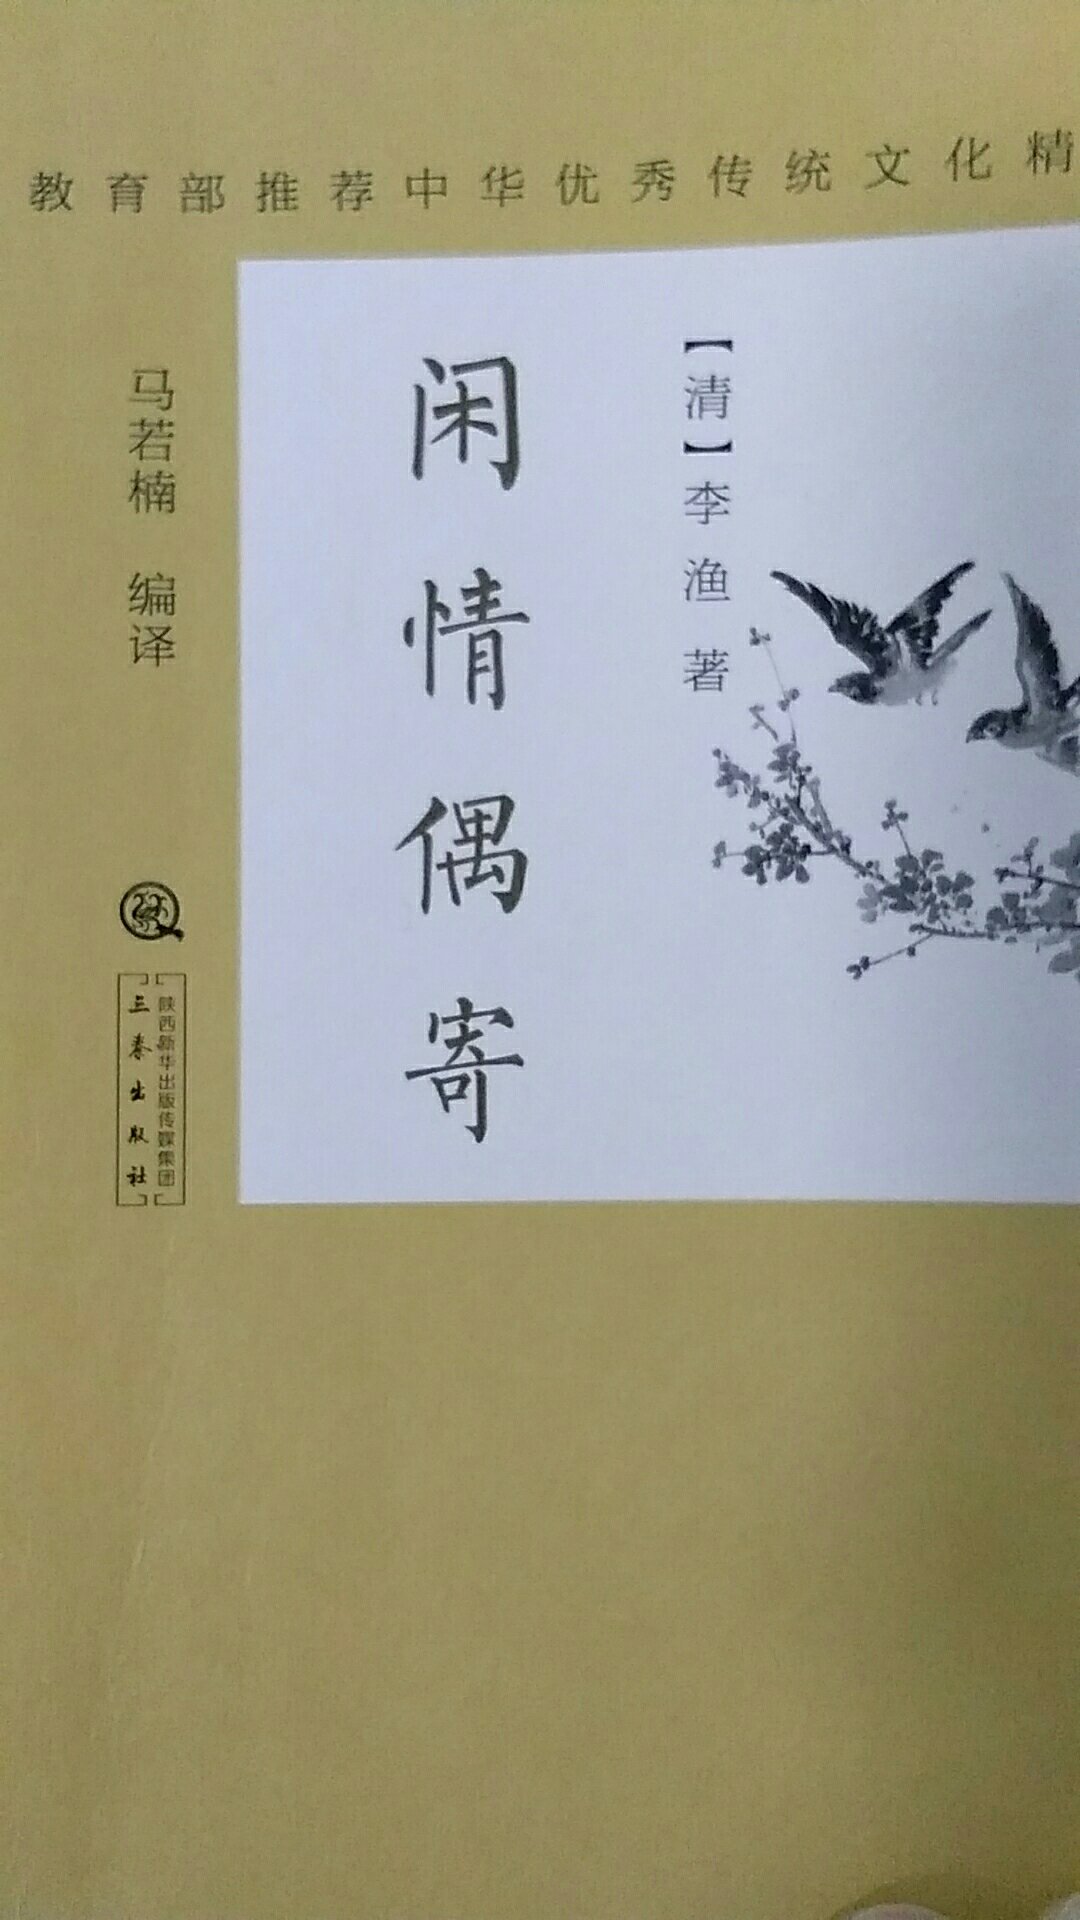 中华优秀传统文化精品，推荐阅读。